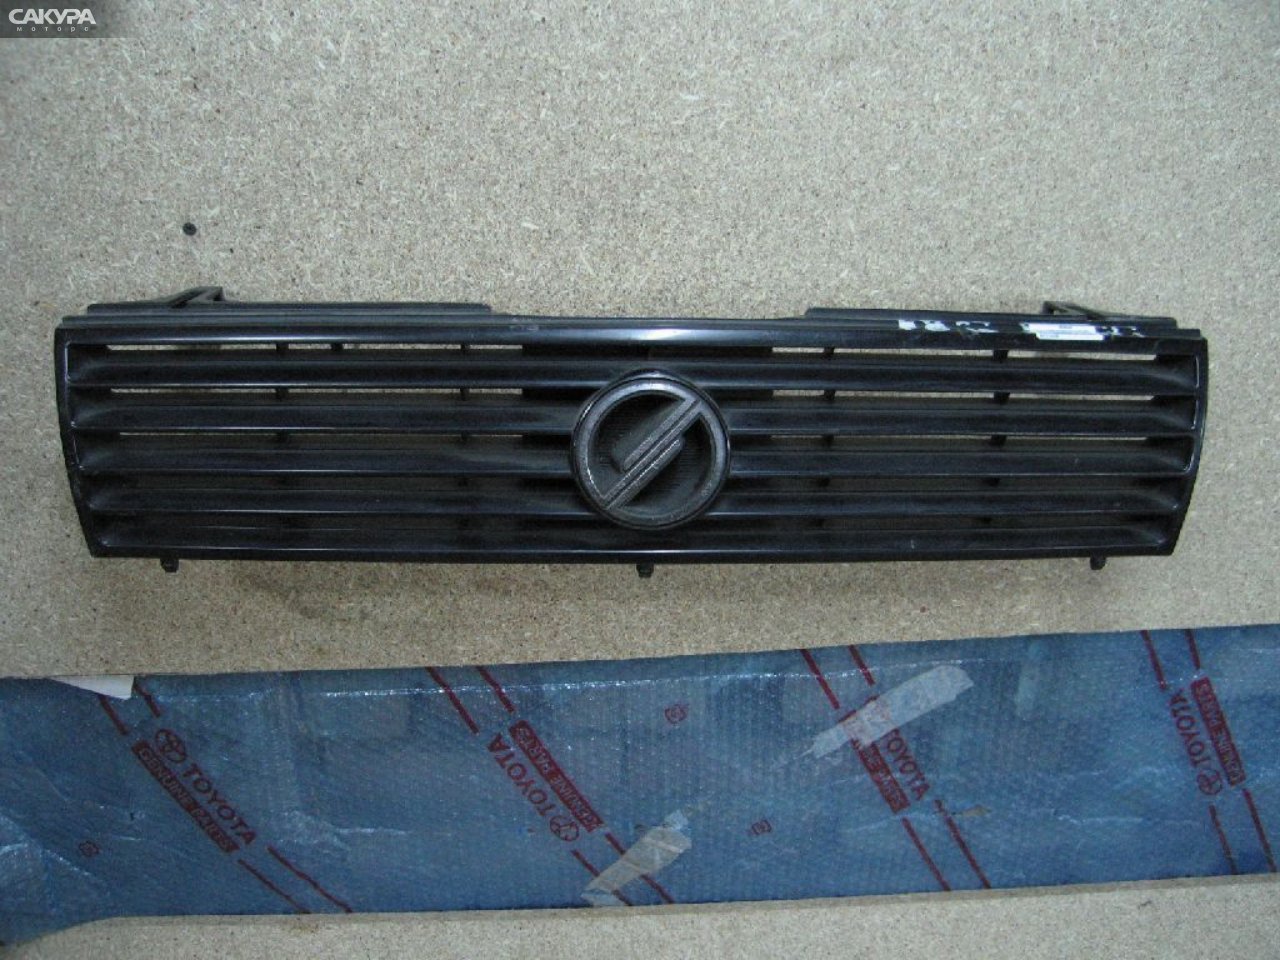 Решетка радиатора Nissan Sunny FB12: купить в Сакура Абакан.